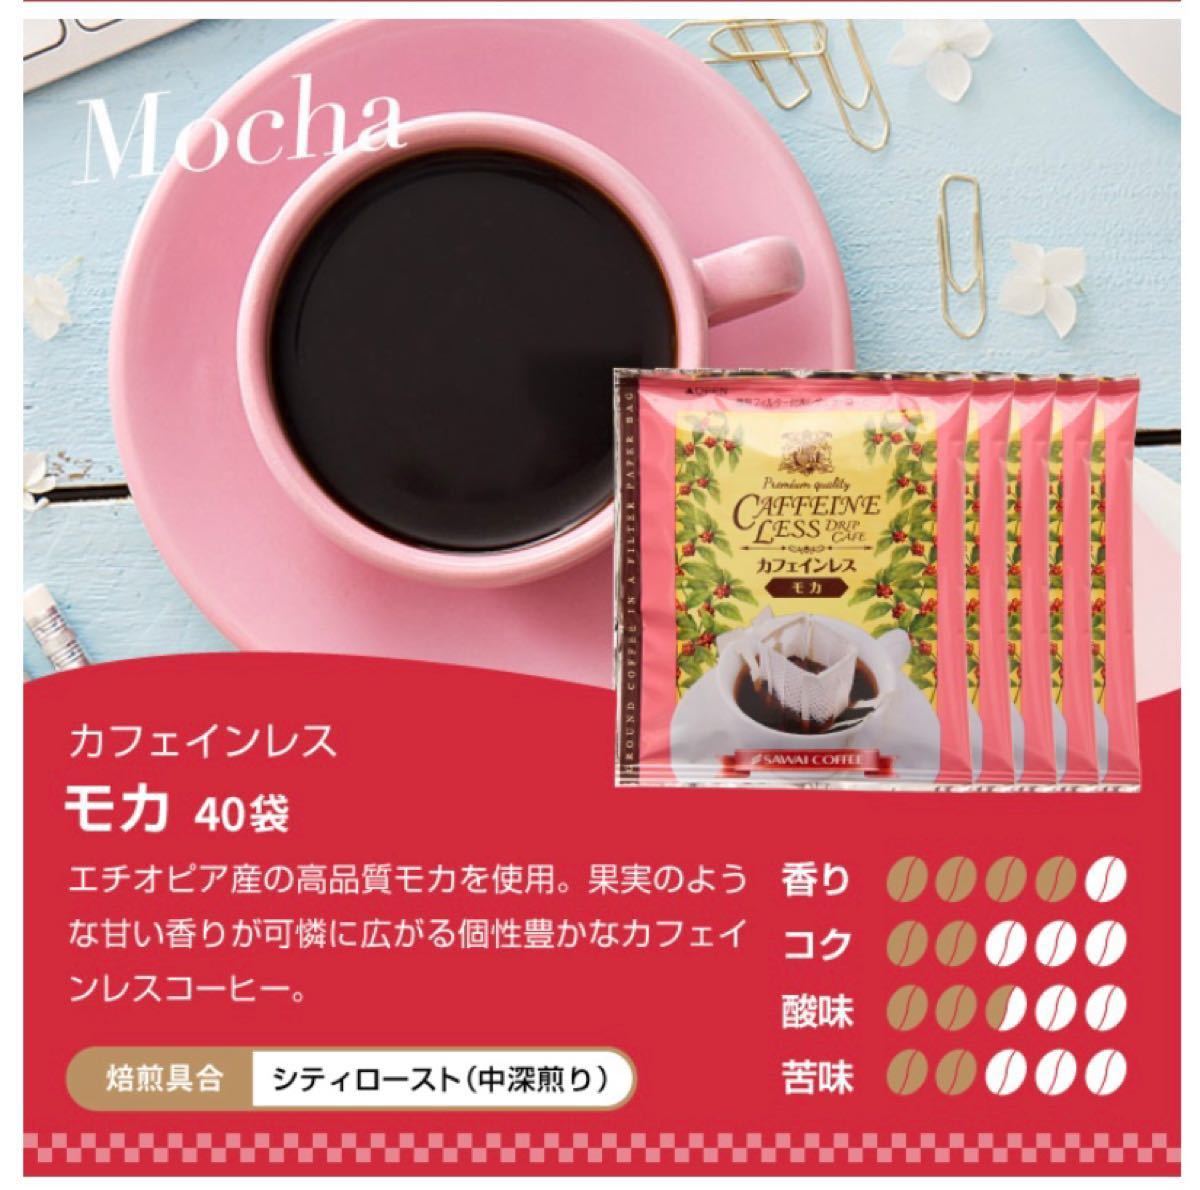 澤井珈琲 カフェインレス ドリップバッグコーヒー 4種 24袋